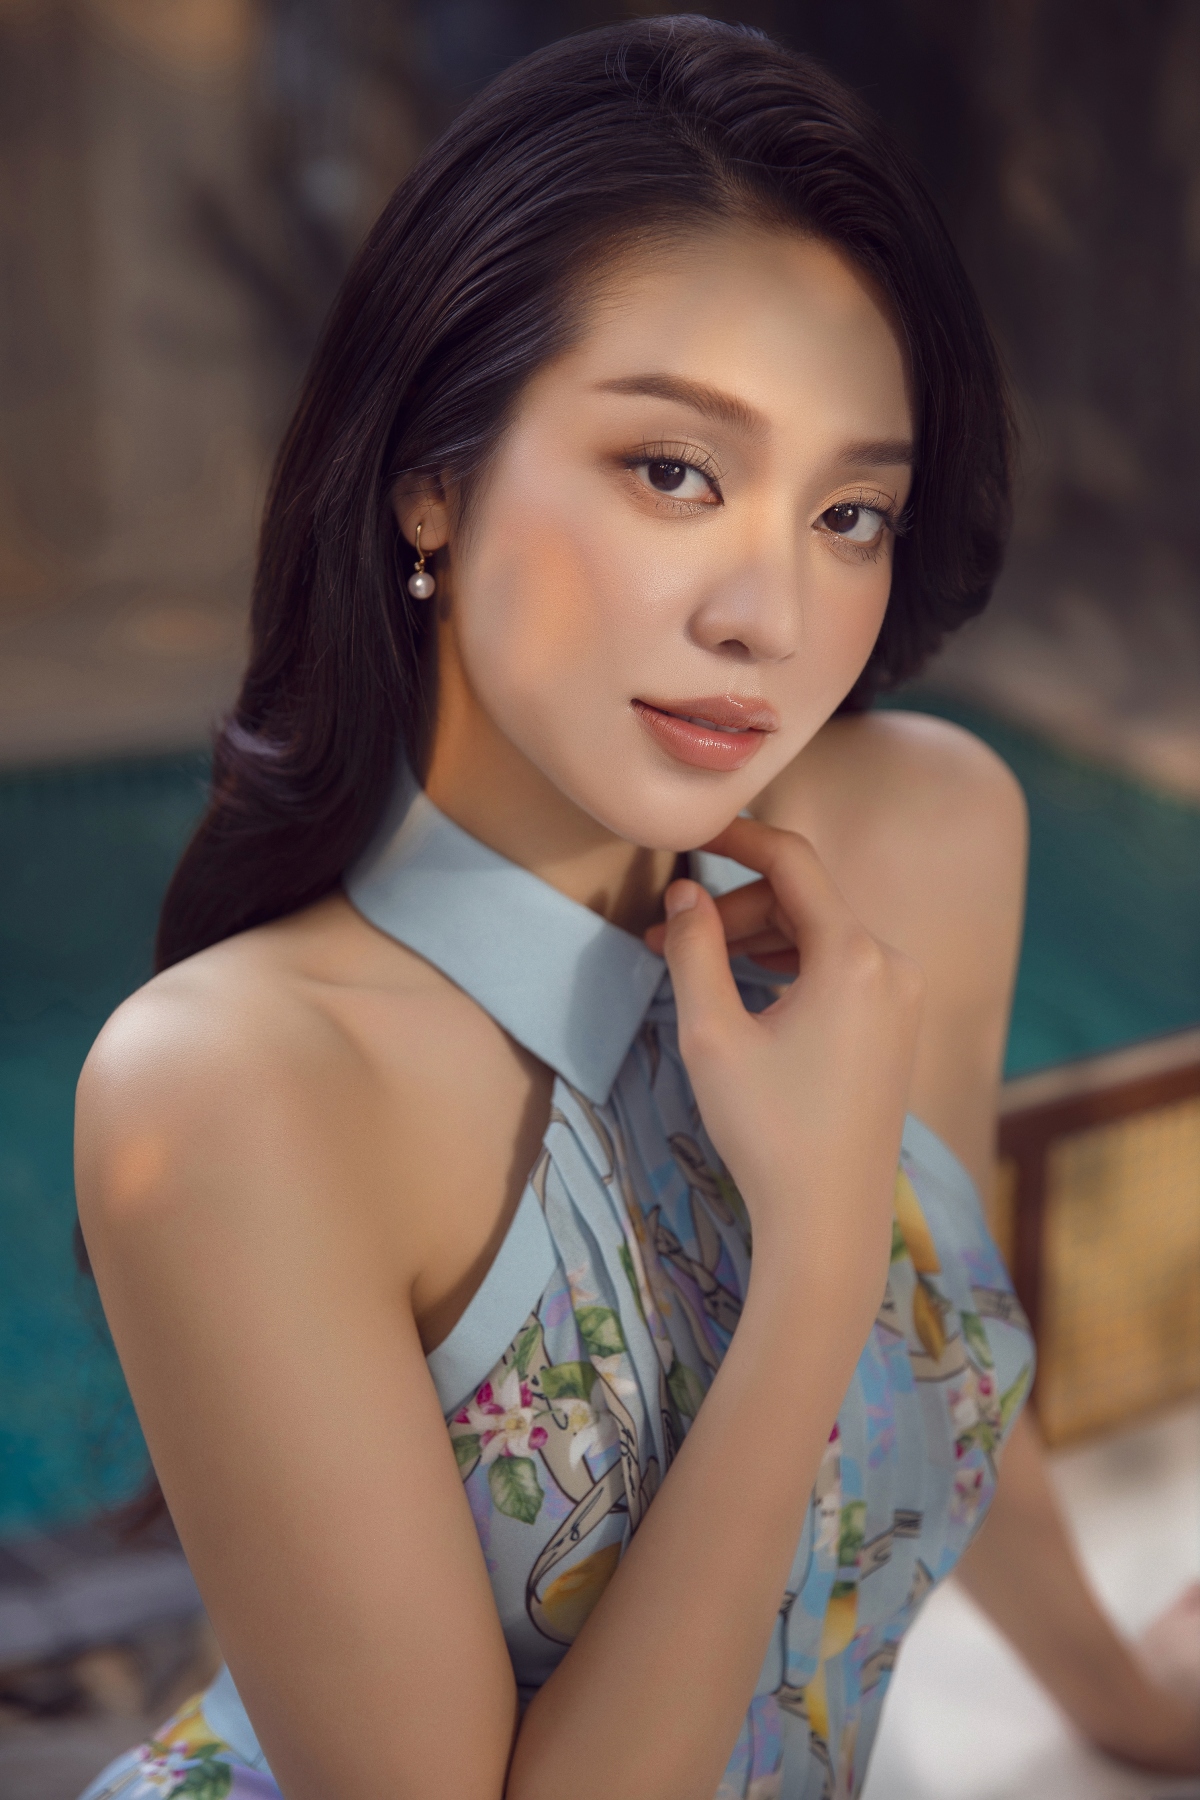 Hoa hậu Thanh Thủy đẹp gợi cảm trong bộ ảnh mới - Ảnh 12.